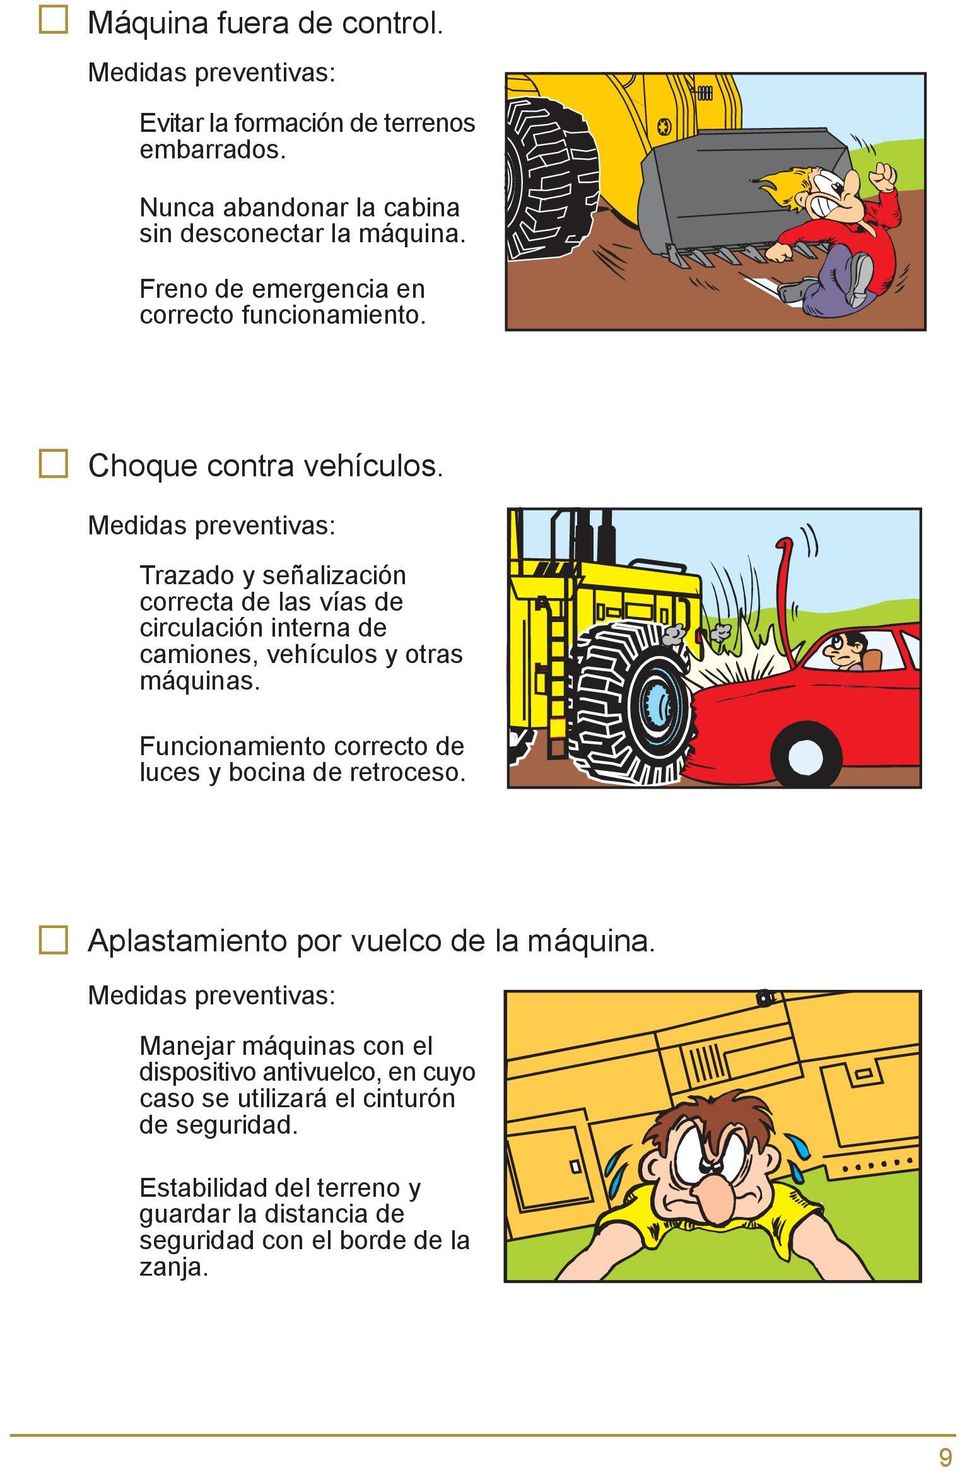 Medidas preventivas: Trazado y señalización correcta de las vías de circulación interna de camiones, vehículos y otras máquinas.